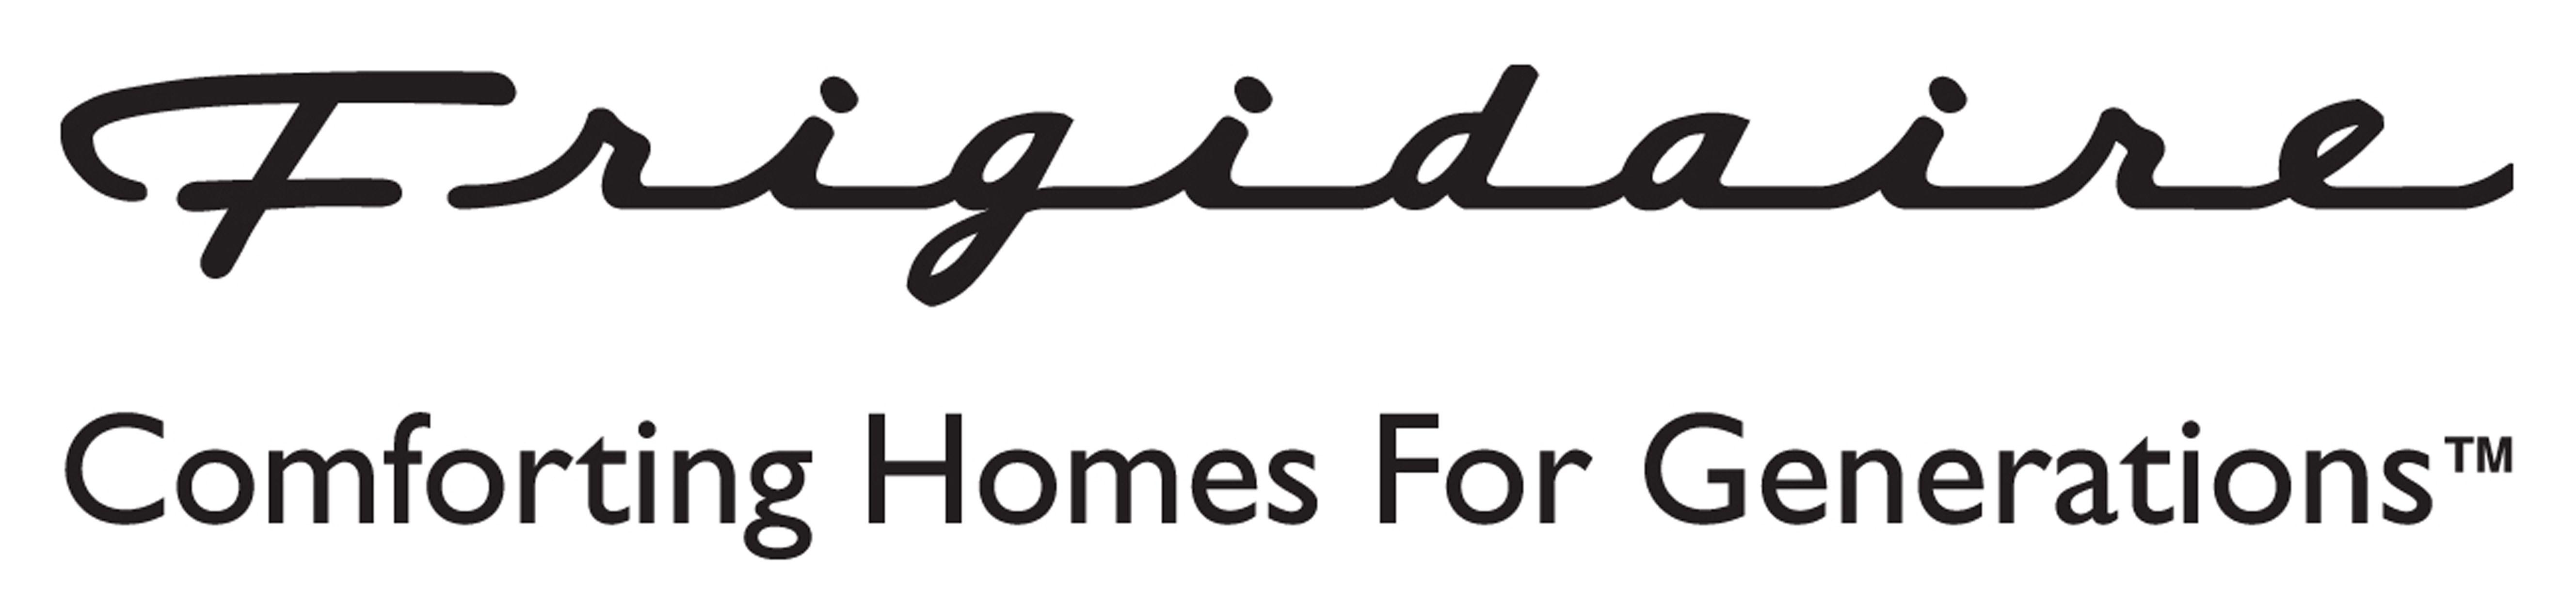 Frigidaire Logo - Frigidaire Logos